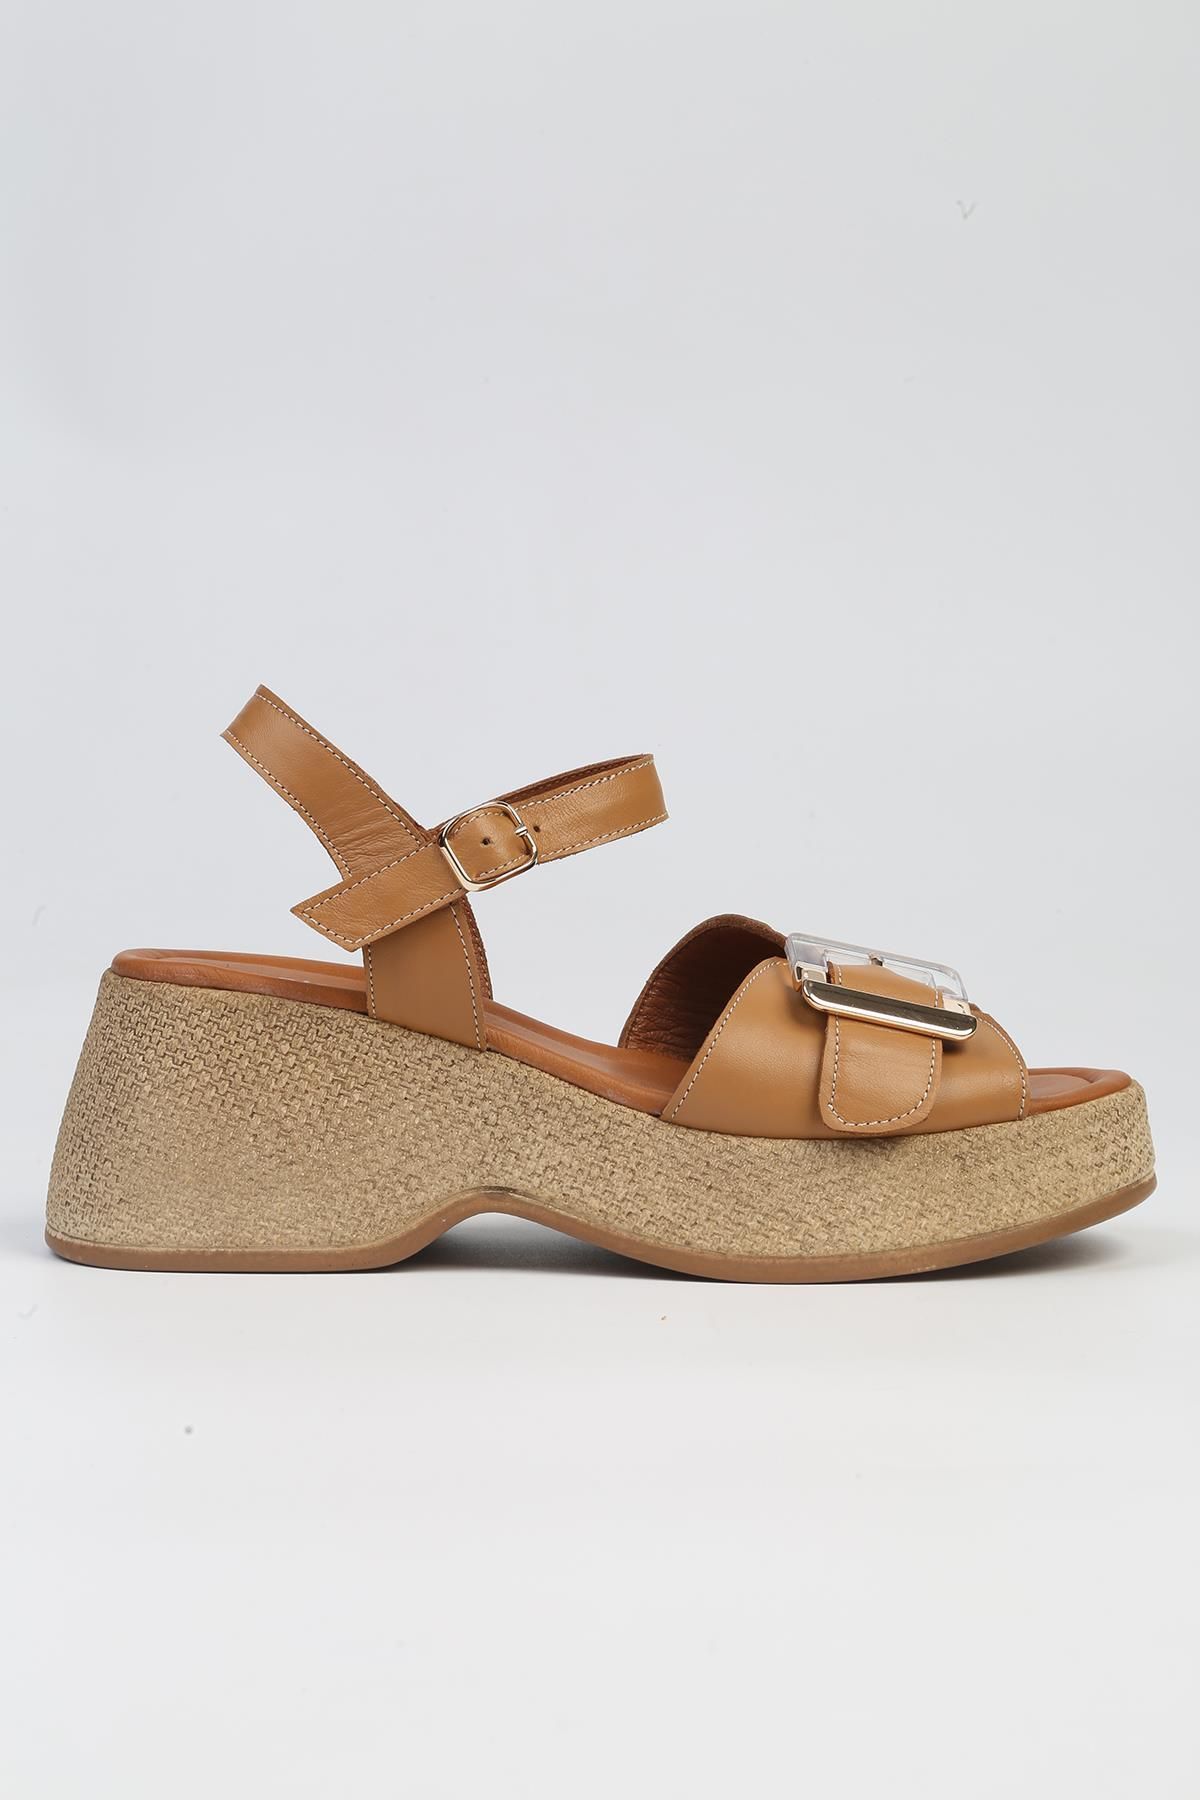 Pierre Cardin ® | PC-7209- 3807 Taba-Kadın Dolgu Topuk Ayakkabı